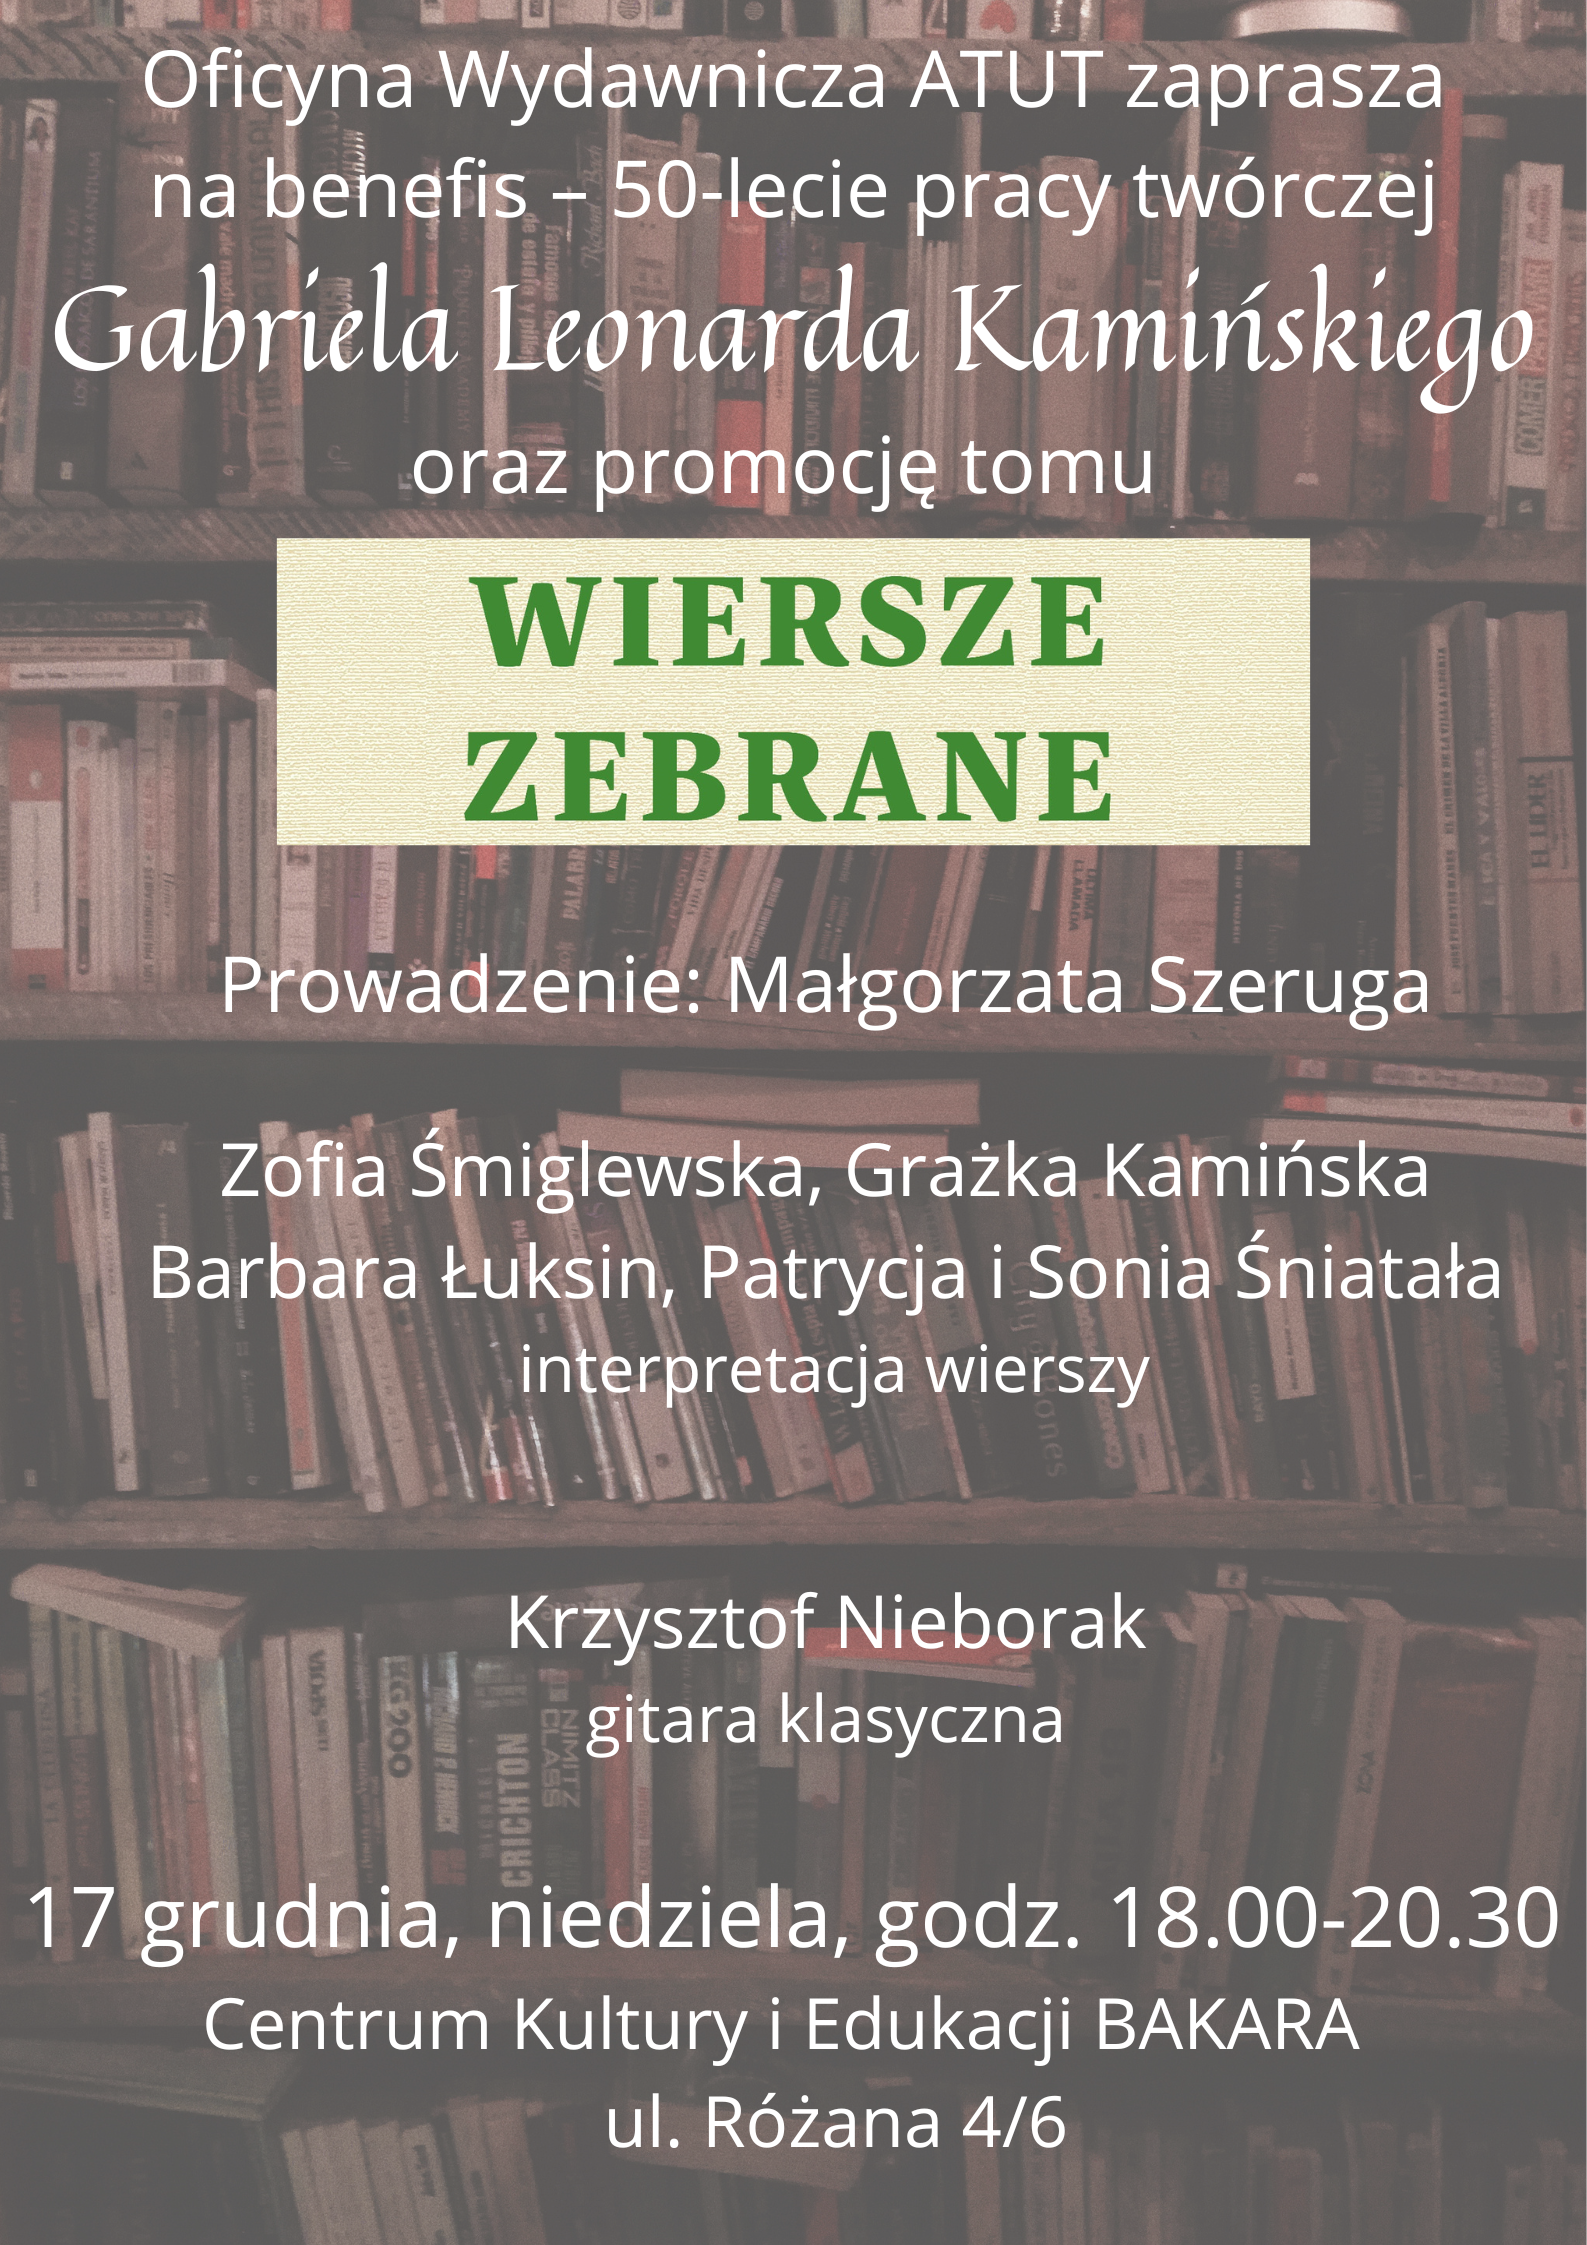 Spotkanie autorskie Gabrielal Leonarda Kamińskiego w Centrum Kultury i Edukacji BAKARA